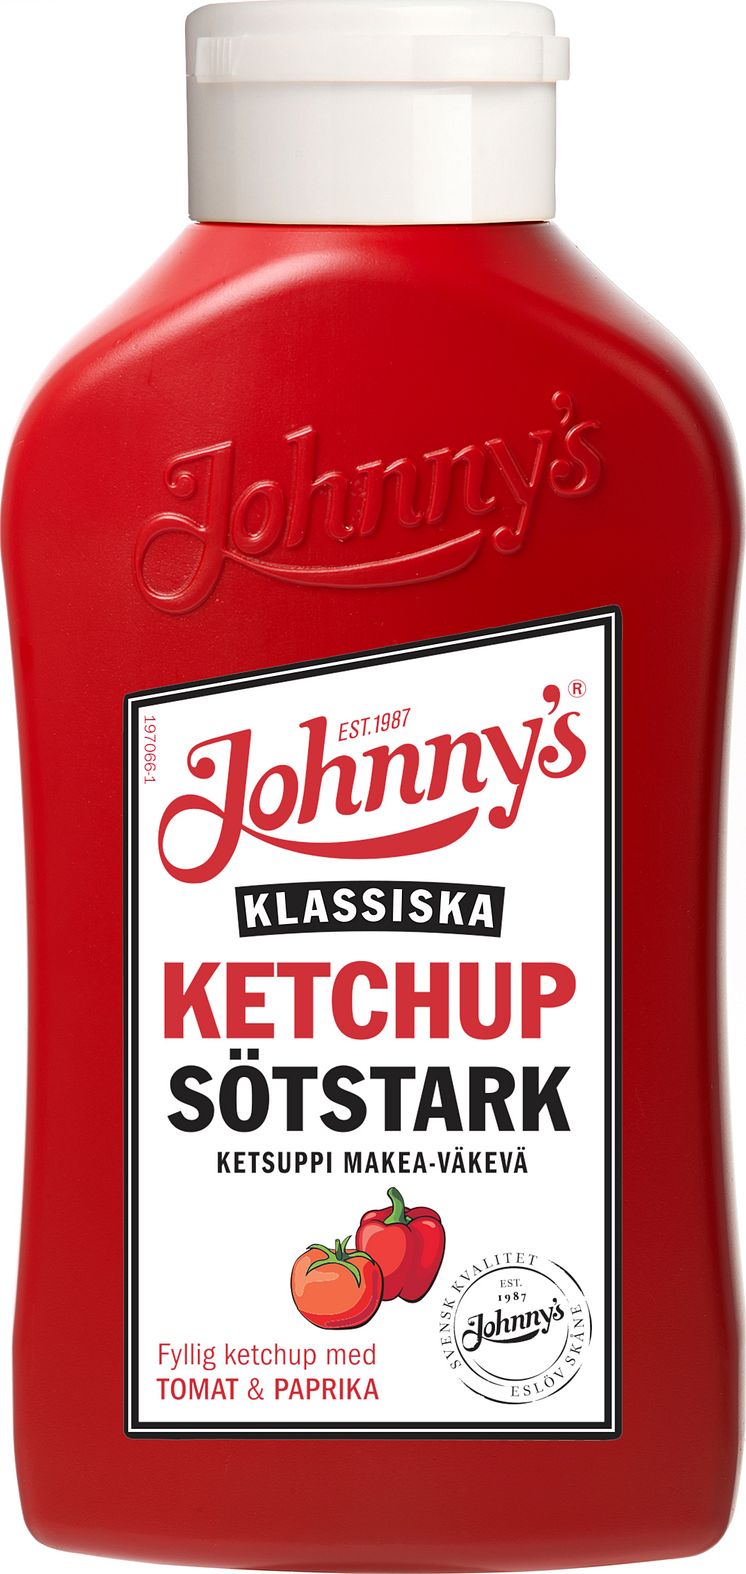 Ketchup Sötstark